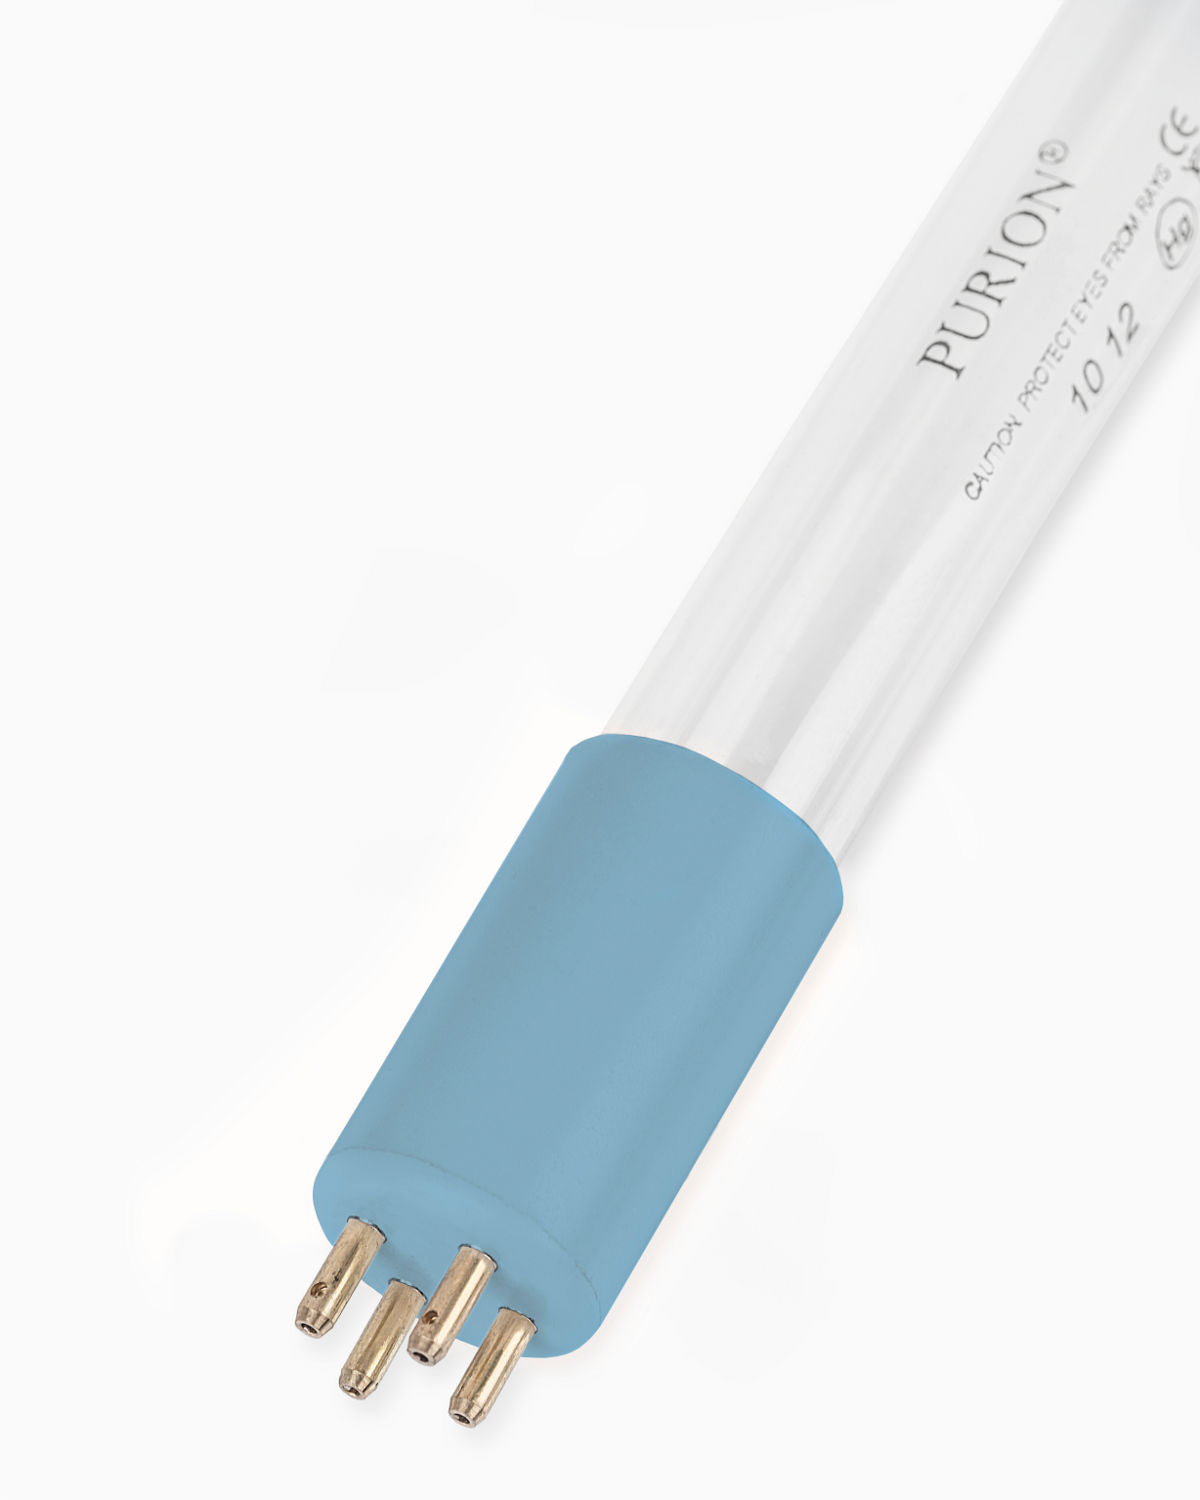 Eine blaue PURION 400 110 - 240 V AC OTC UV-C-Lampe auf weißem Hintergrund sorgt für entkeimtes Trinkwasser.